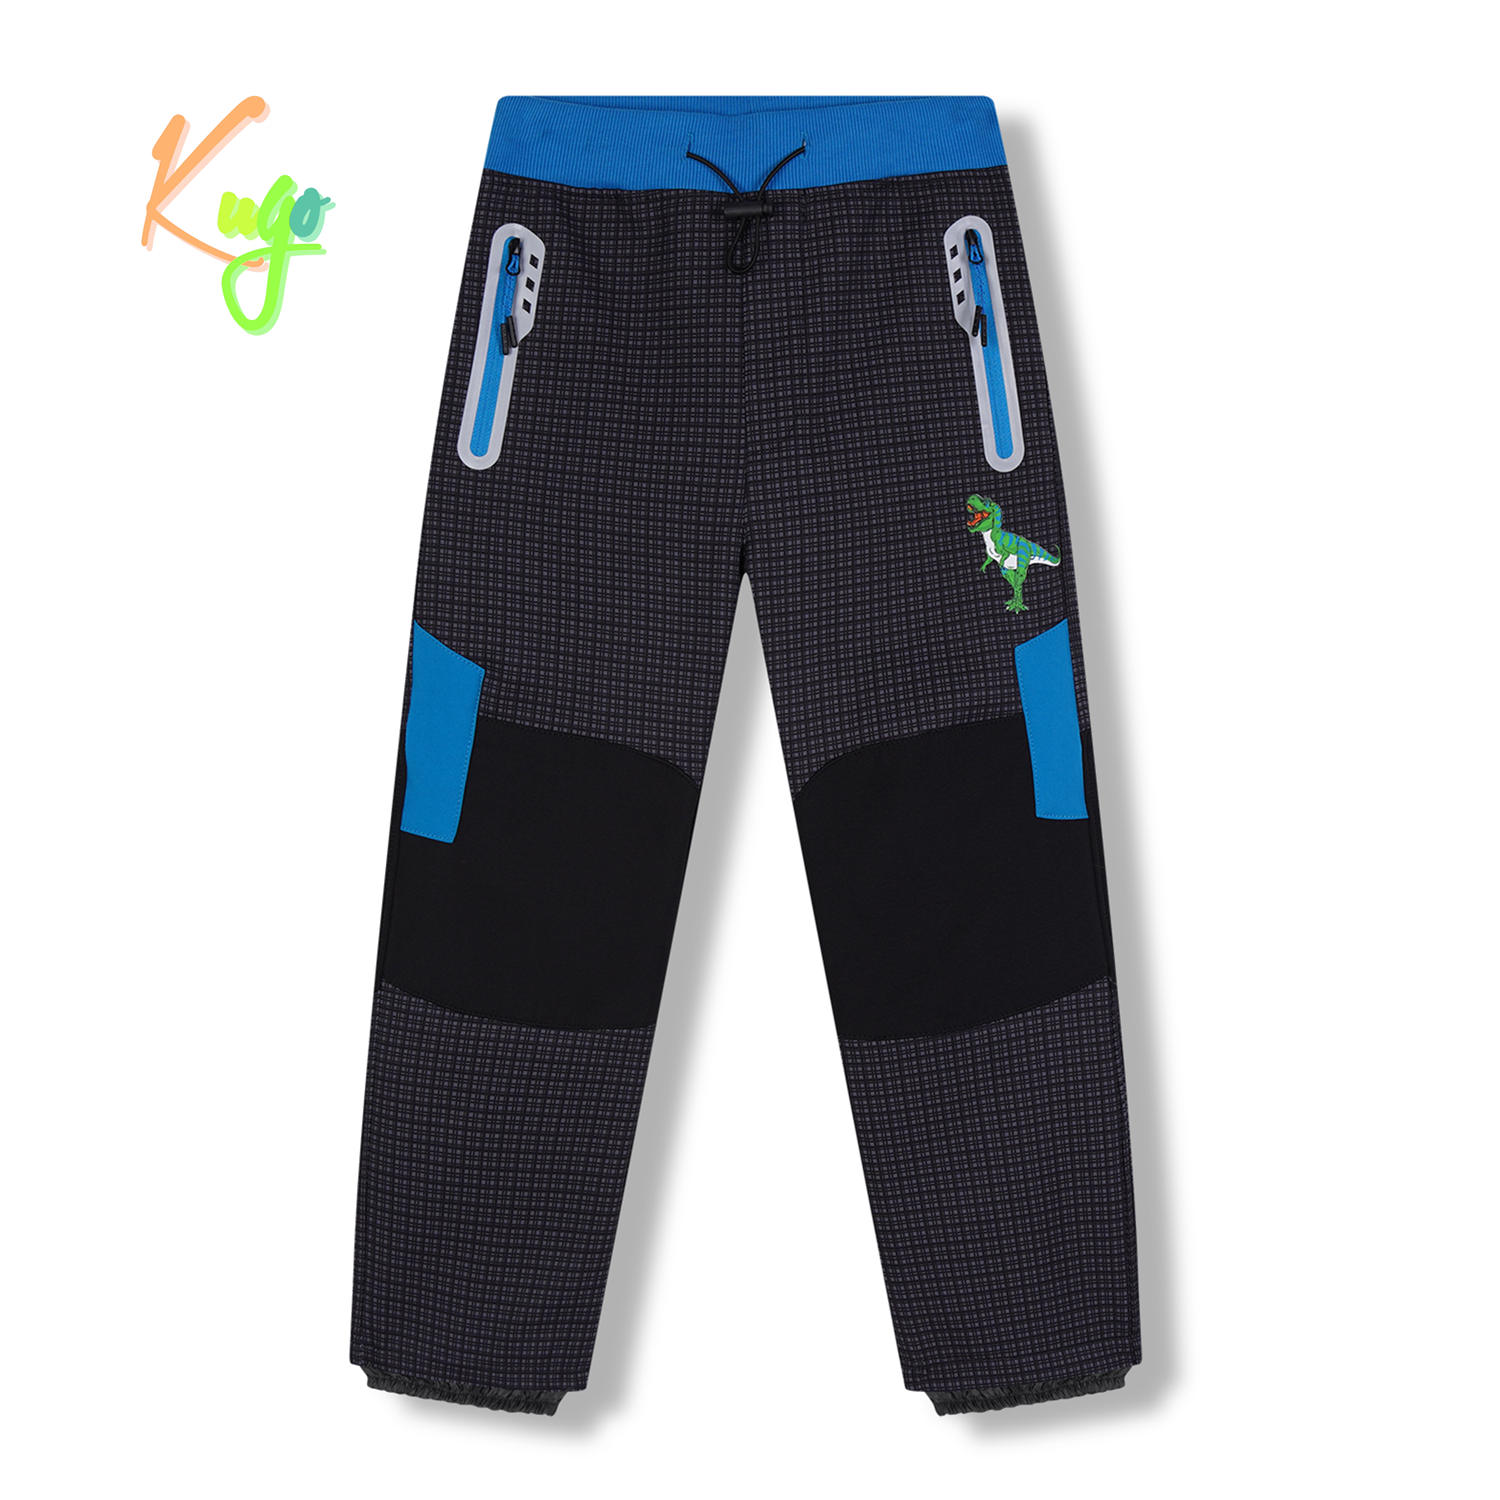 Chlapecké softshellové kalhoty, zateplené - KUGO HK5630, šedá / tyrkysové zipy Barva: Šedá, Velikost: 104